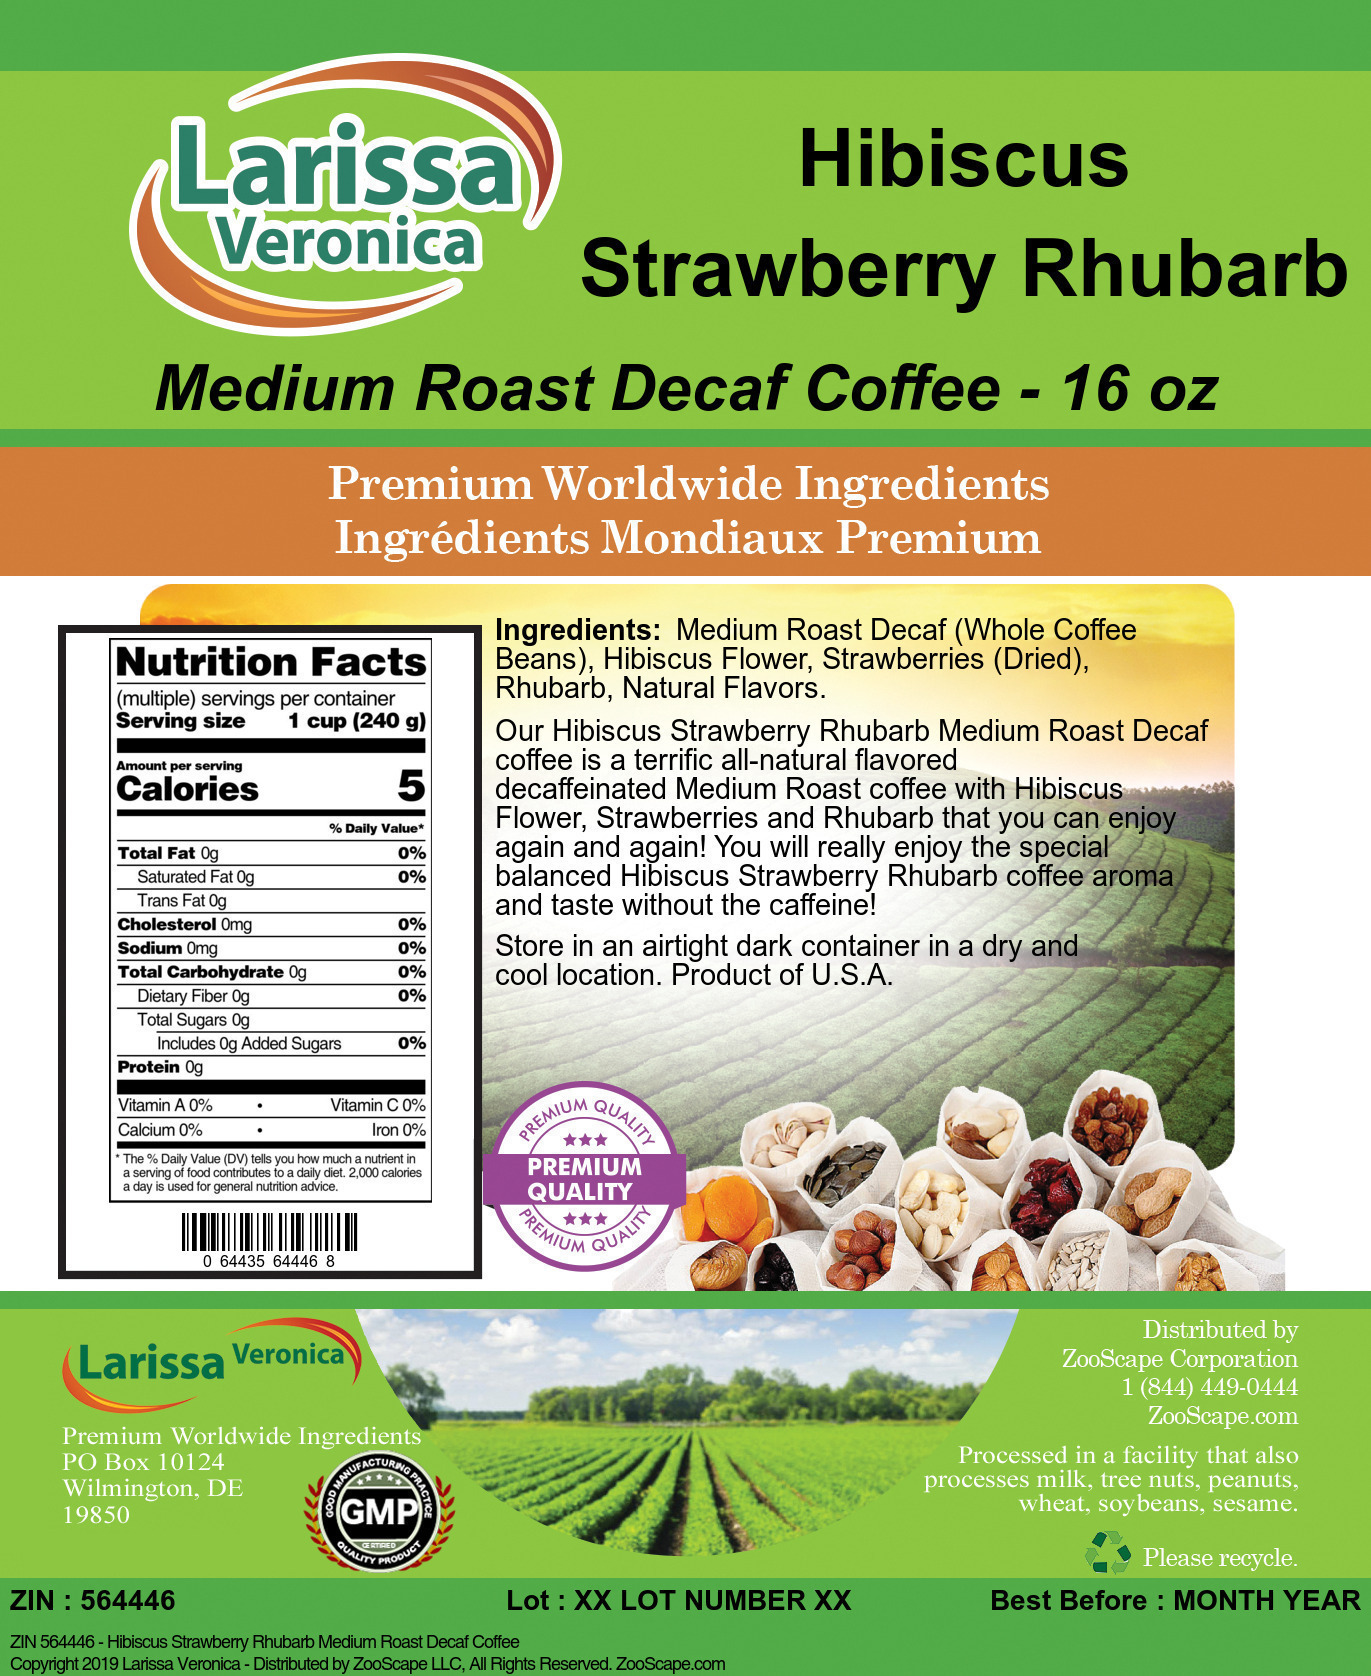 Hibiscus Strawberry Rhubarb Medium Roast Decaf Coffee - Label